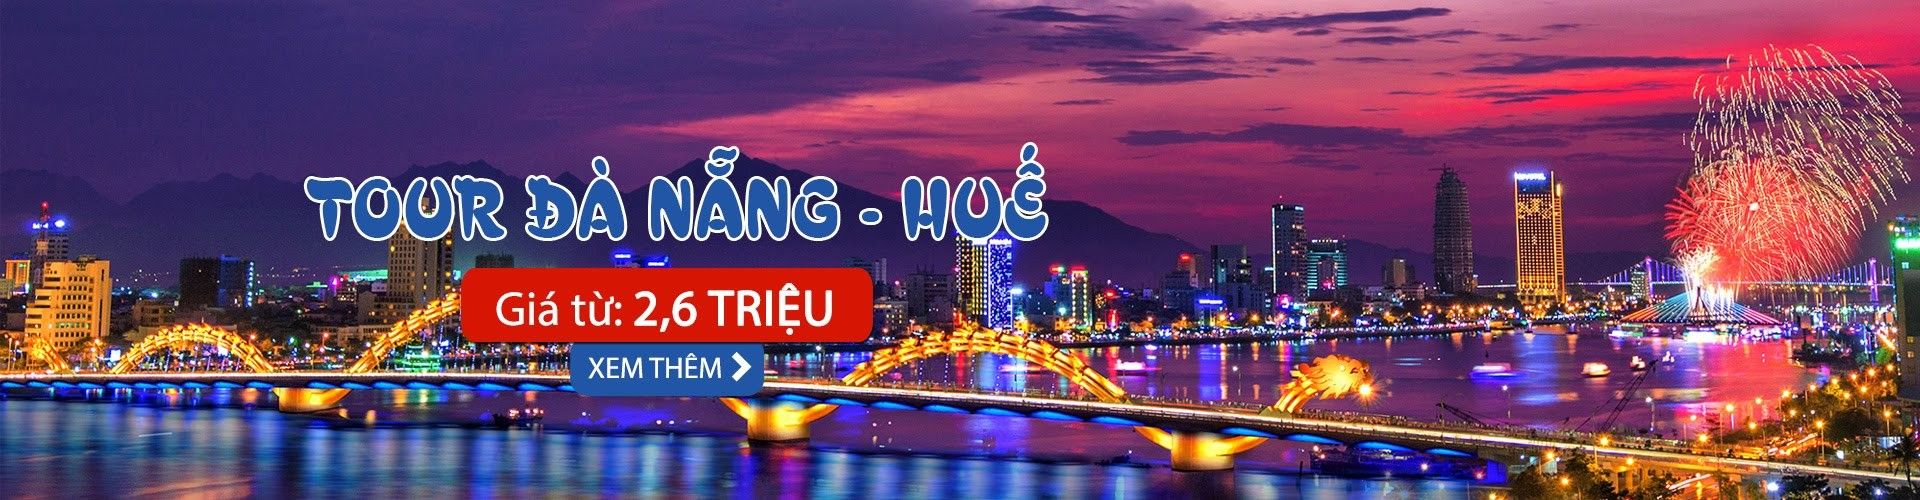 Các điểm du lịch tại Đà Nẵng